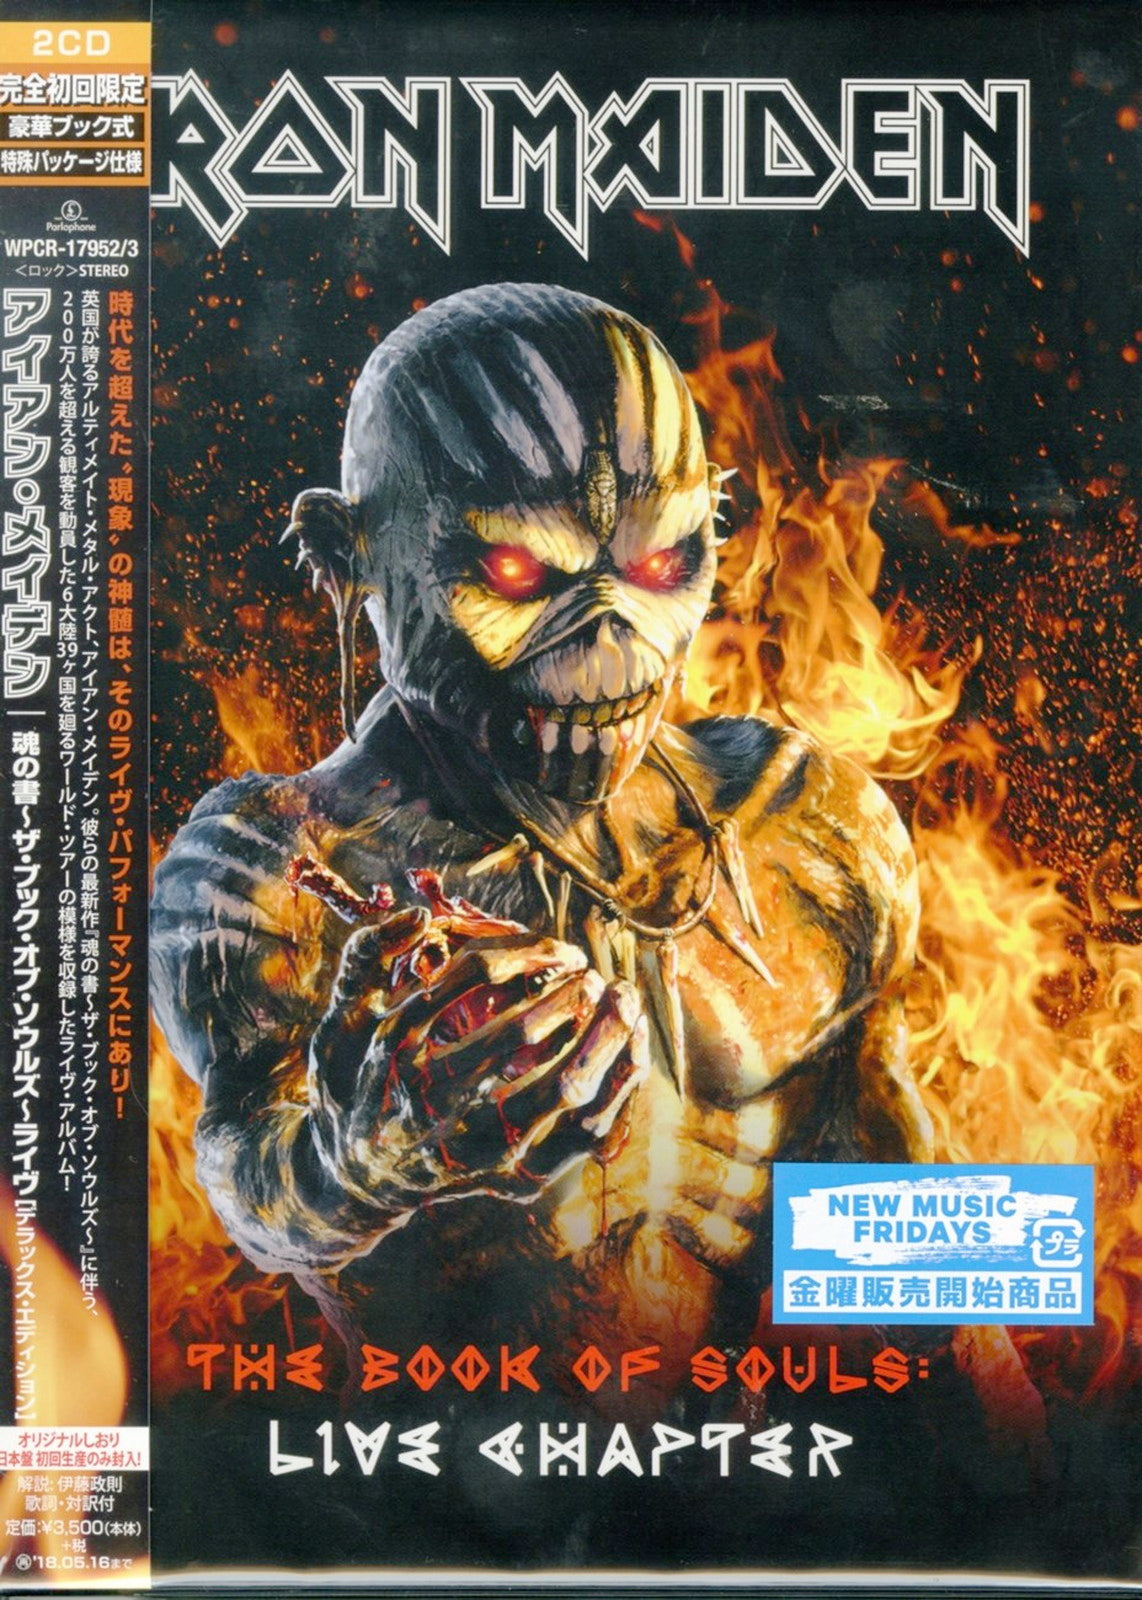 CD】IRON MAIDEN - SENJUTSU戦術(完全生産限定盤) [新品未開封品] - CD